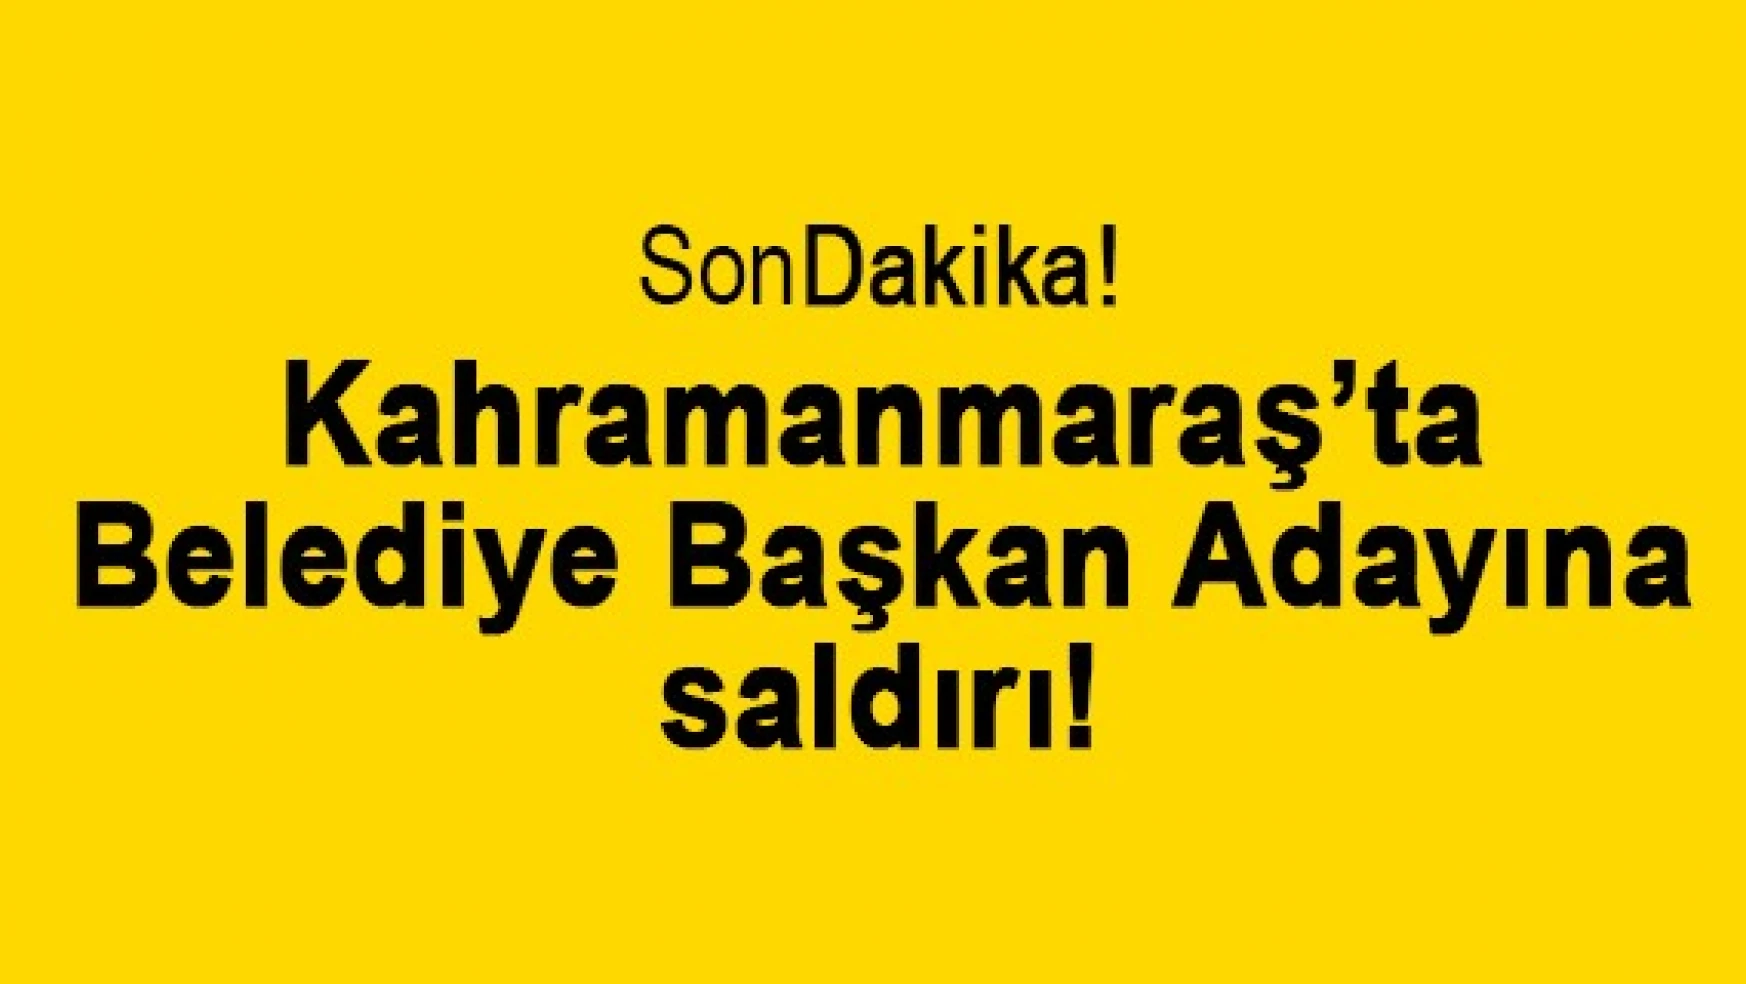 Kahramanmaraş'ta Belediye Başkan adayına saldırı!